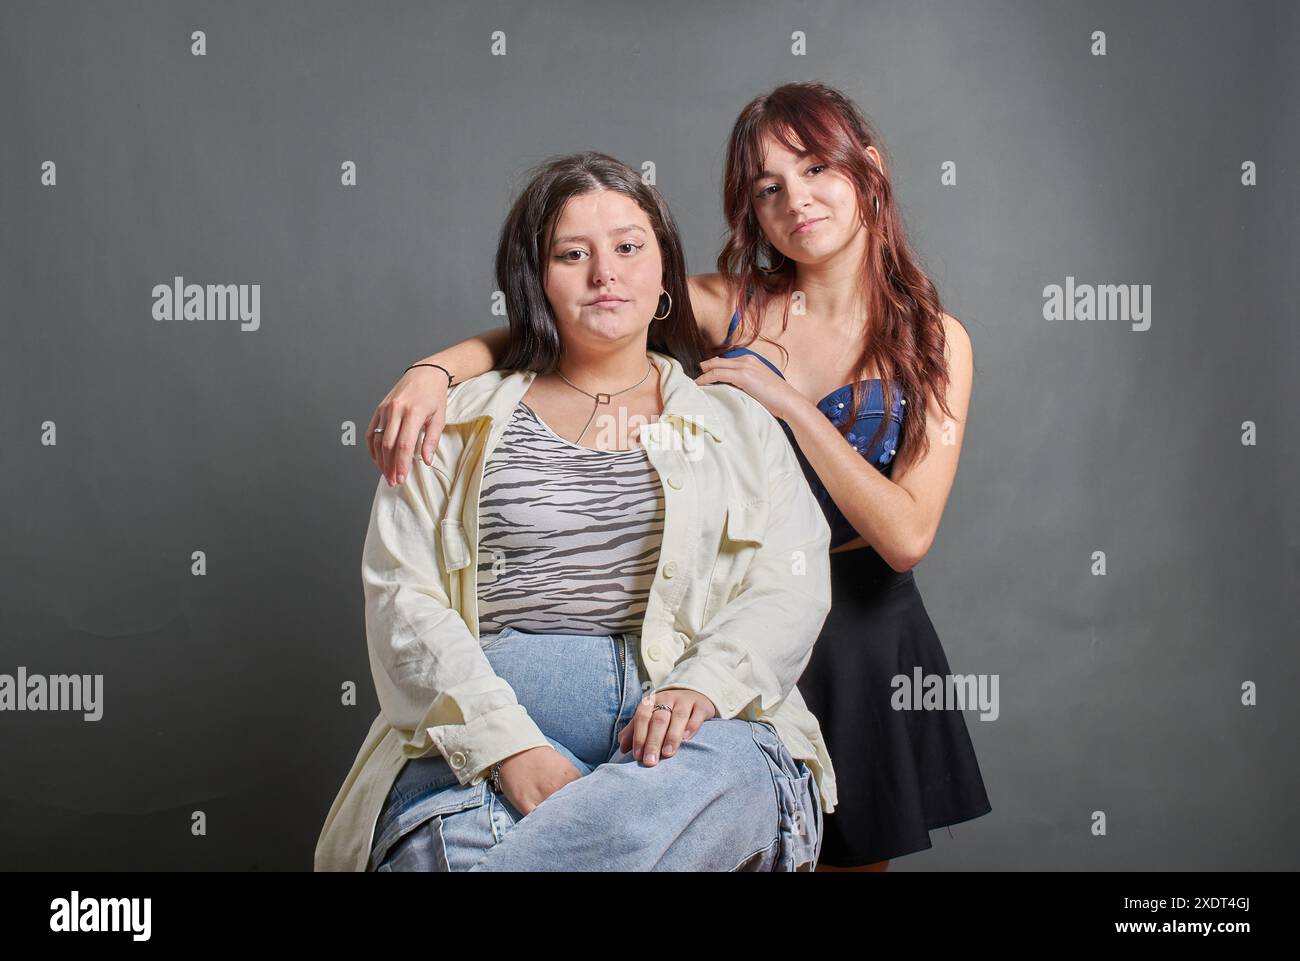 Deux femmes posent pour une photo, l'une d'elles porte une chemise blanche avec un imprimé zèbre. L'une des filles est en surpoids et l'autre est très peau Banque D'Images